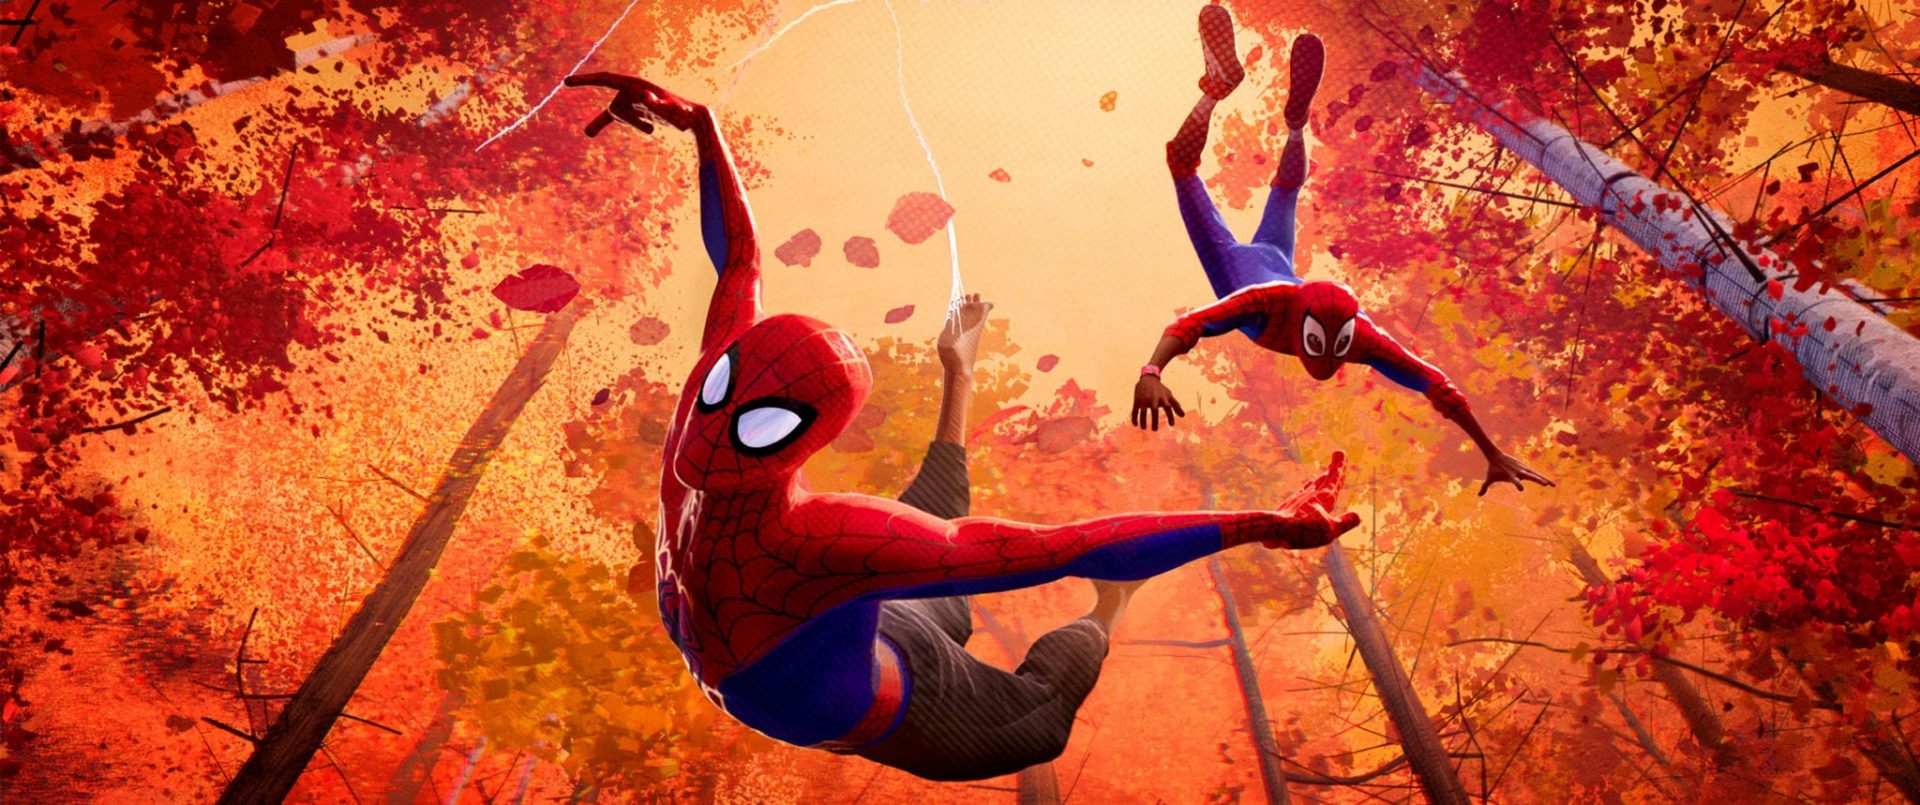 Trailer: Película de Animación – Spiderman, Un Nuevo Universo